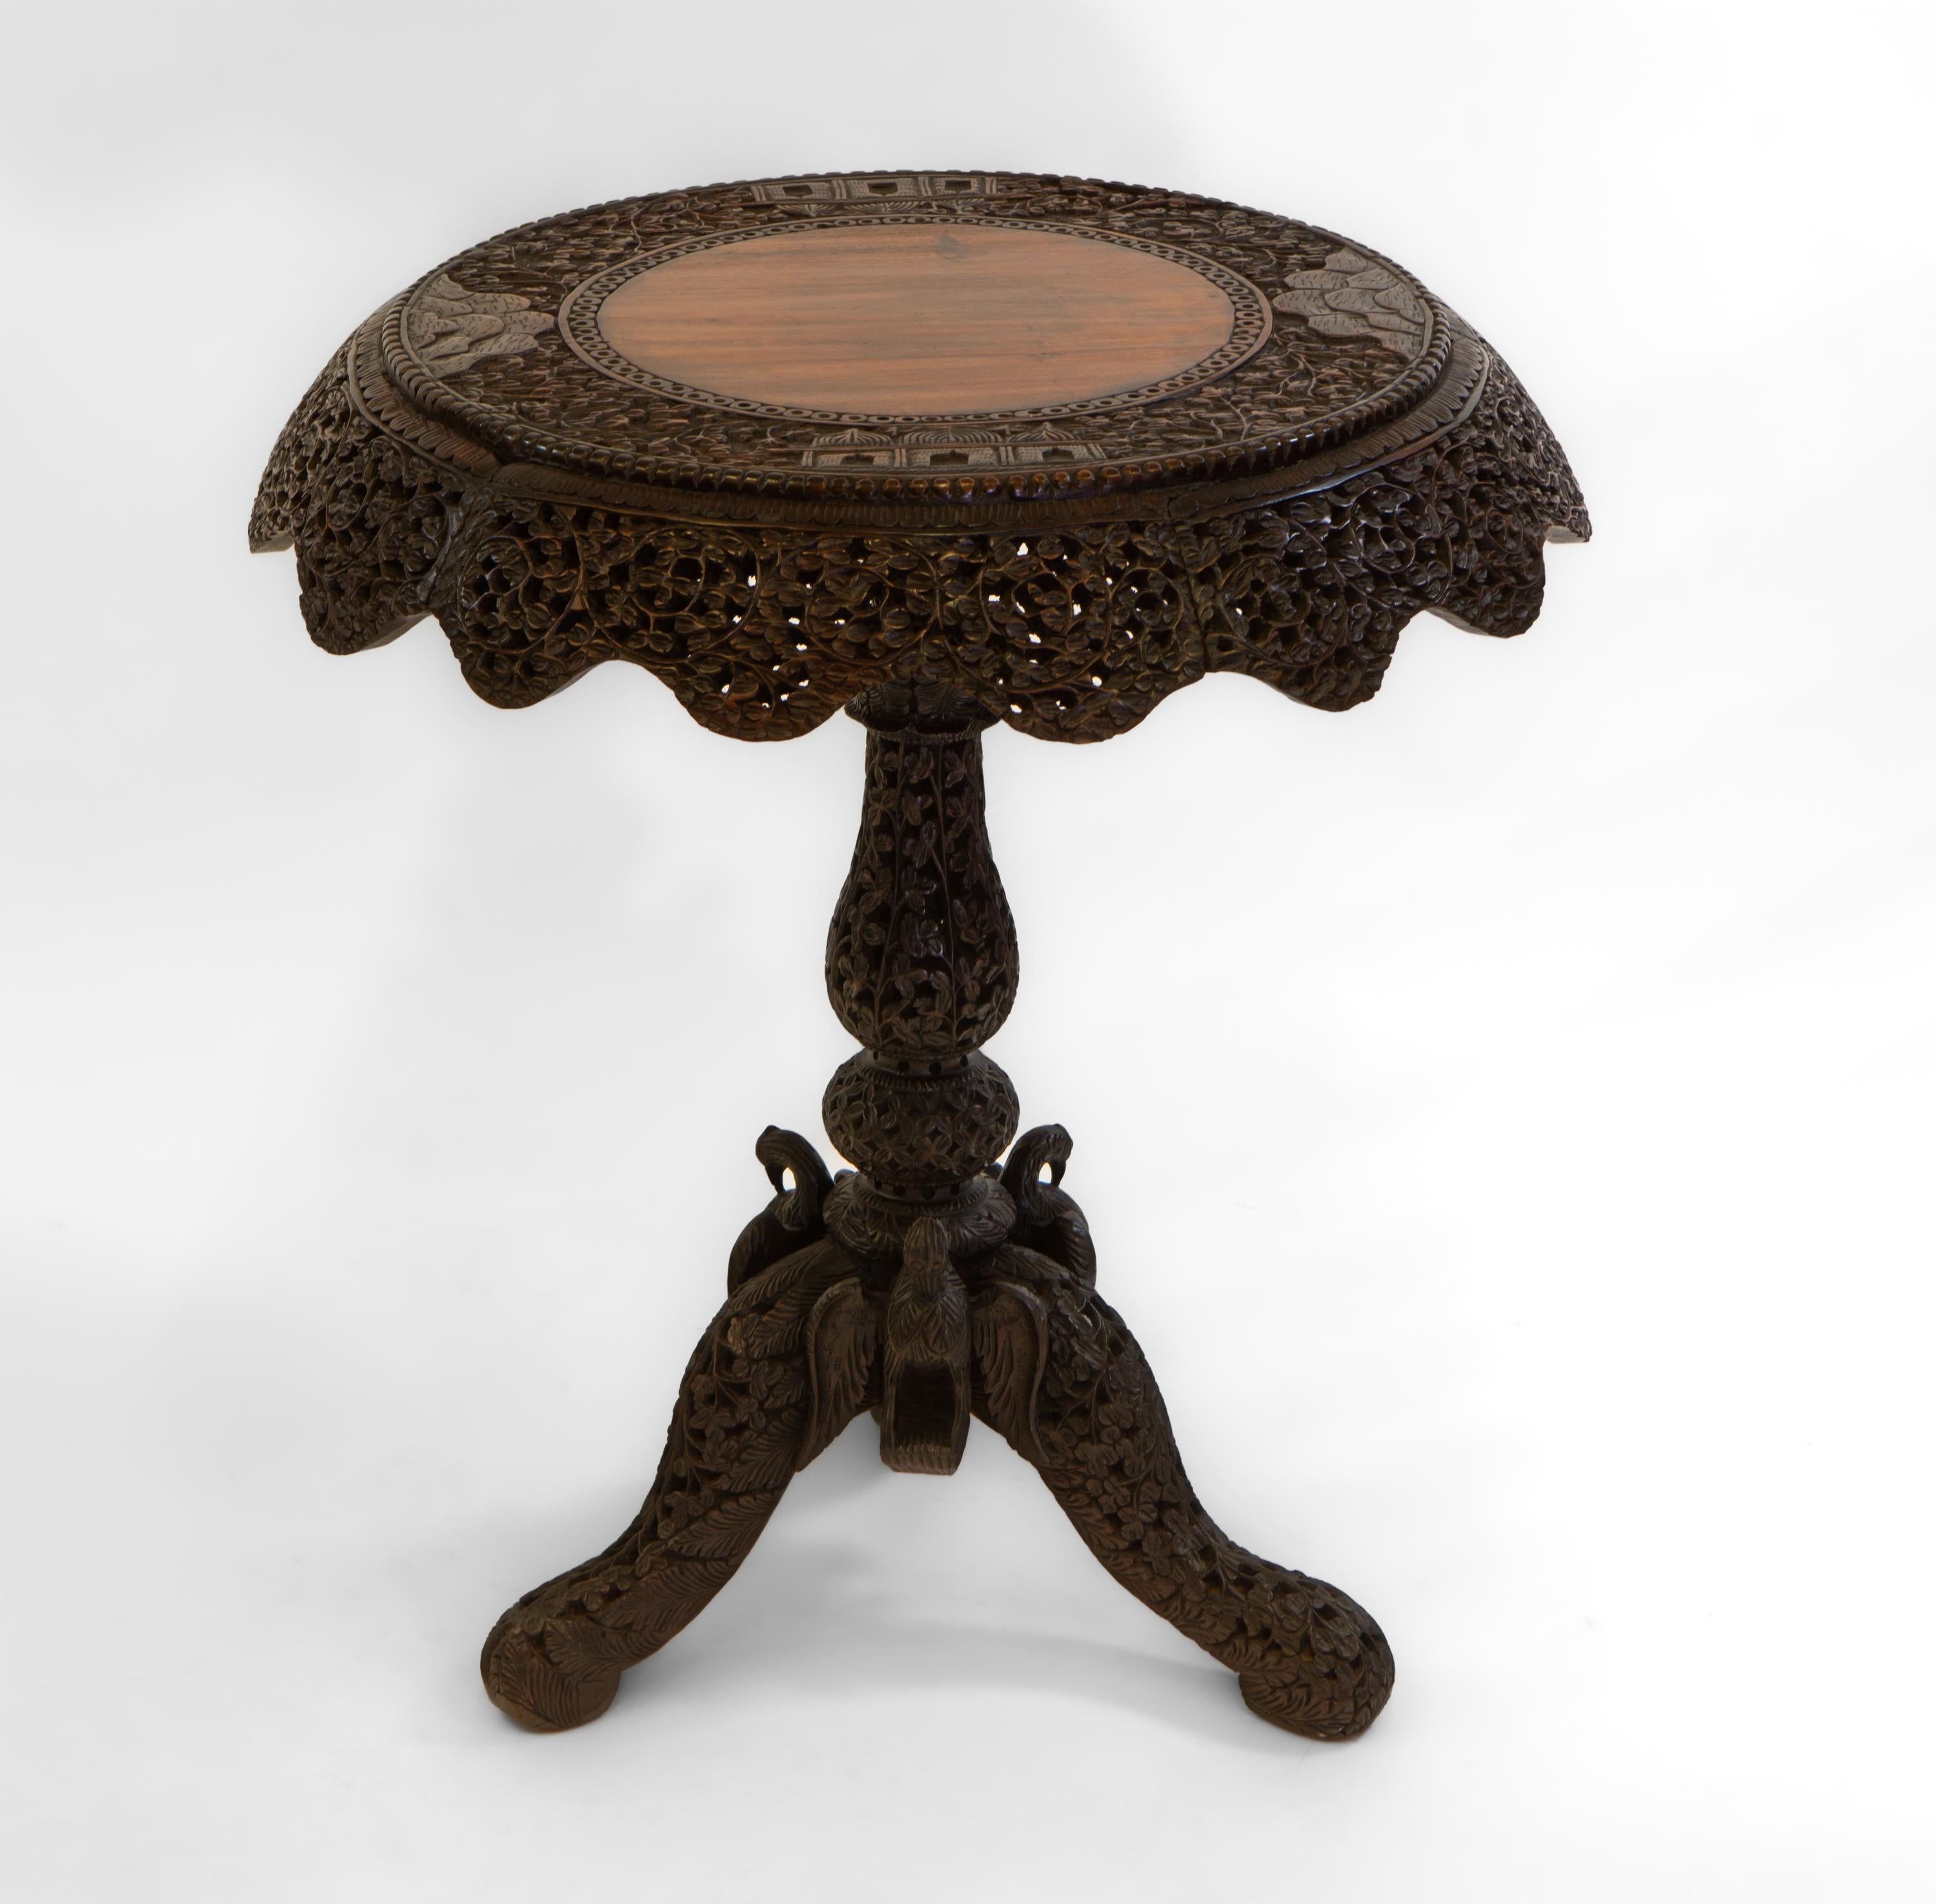 Magnifique table d'appoint ancienne en bois de padouk birman (aujourd'hui Myanmar) abondamment sculpté à la main. Circa 1880.

Le plateau de la table est orné d'une bordure décorative avec une frise en forme. La table est ornée d'un feuillage percé